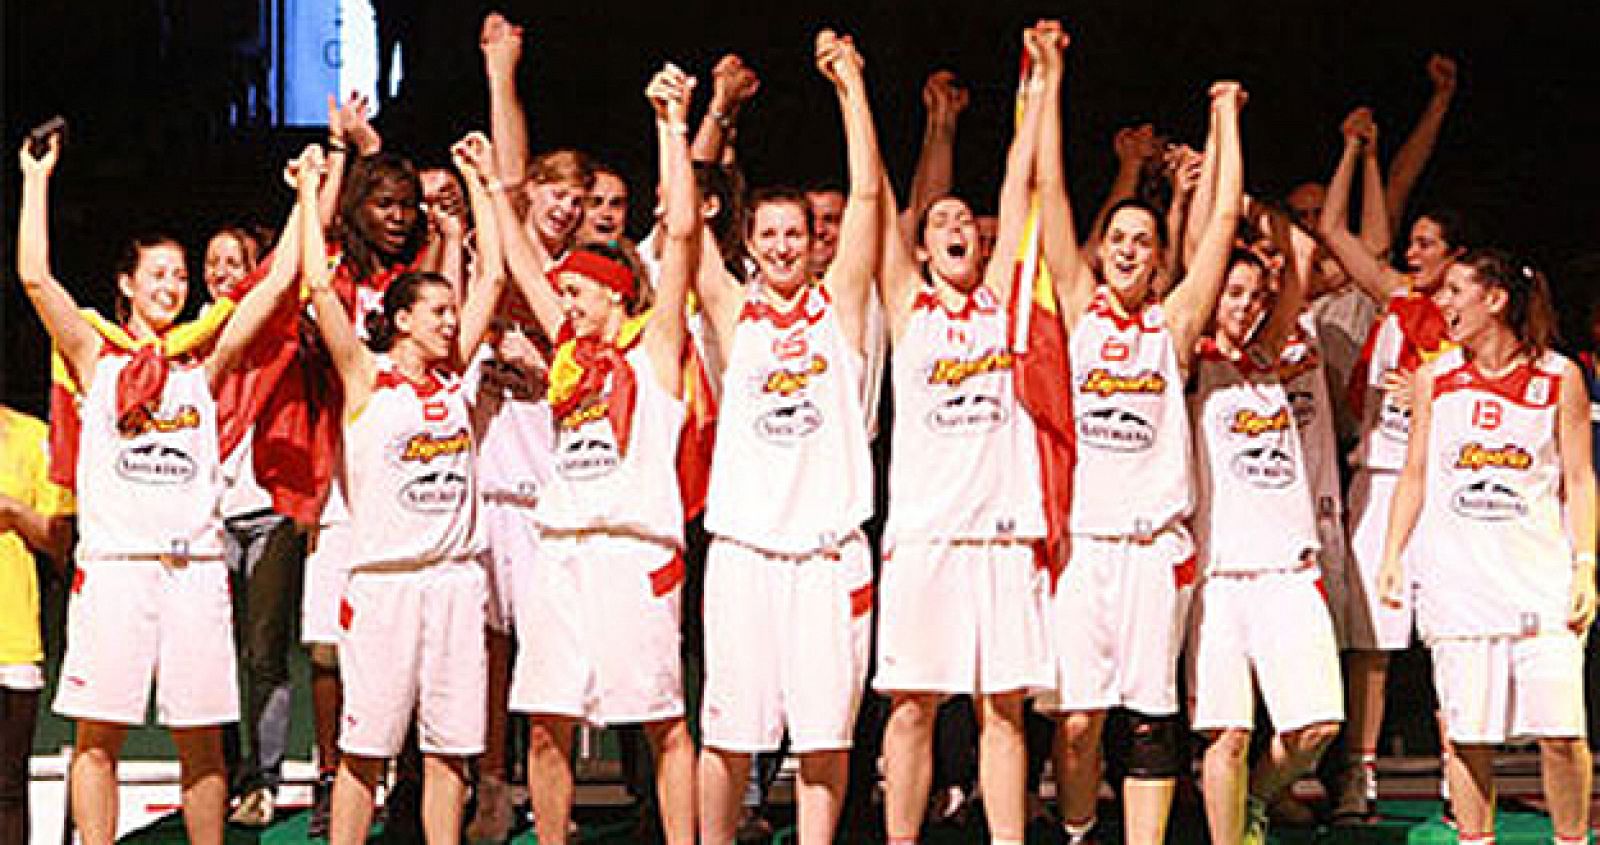 La selección española rubricó con brillantez el Europeo de baloncesto femenino sub'18 y se proclamó campeona tras un autoritario triunfo en la final ante Francia por 64-54.